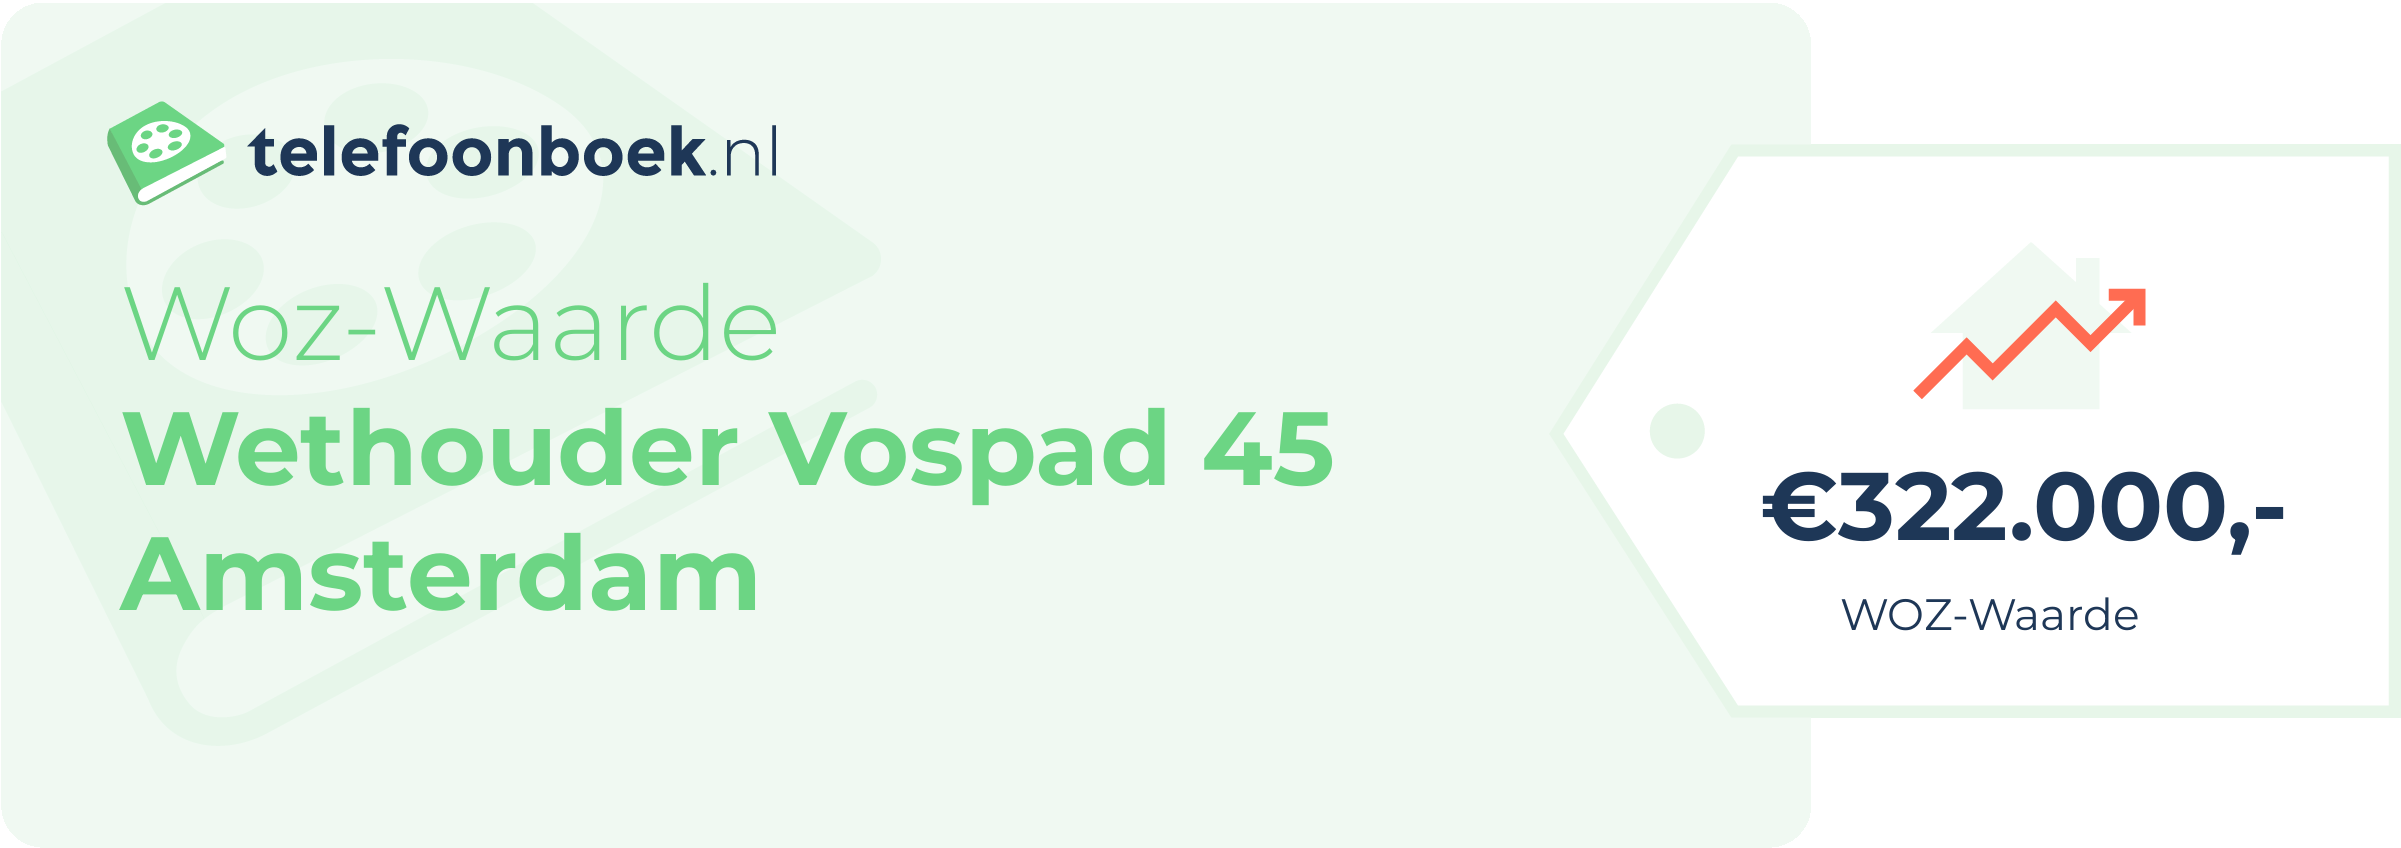 WOZ-waarde Wethouder Vospad 45 Amsterdam